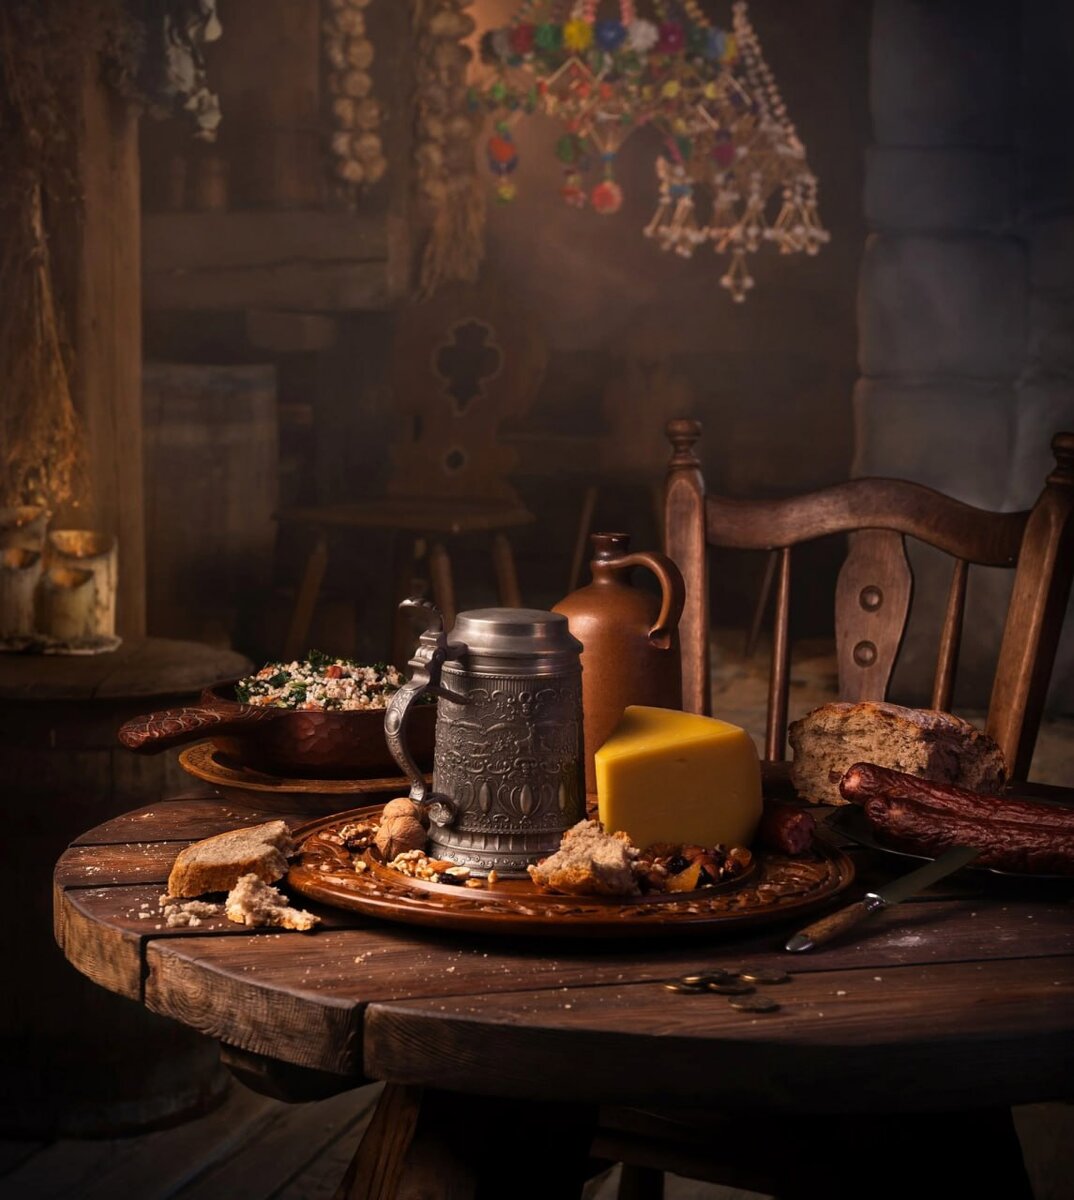 Спустя год после анонса вышла официальная кулинарная книга по игре The Witcher и теперь фанаты этой игры смогут сами попробовать все те блюда, которые встречали на просторах вселенной Ведьмака.-2-2